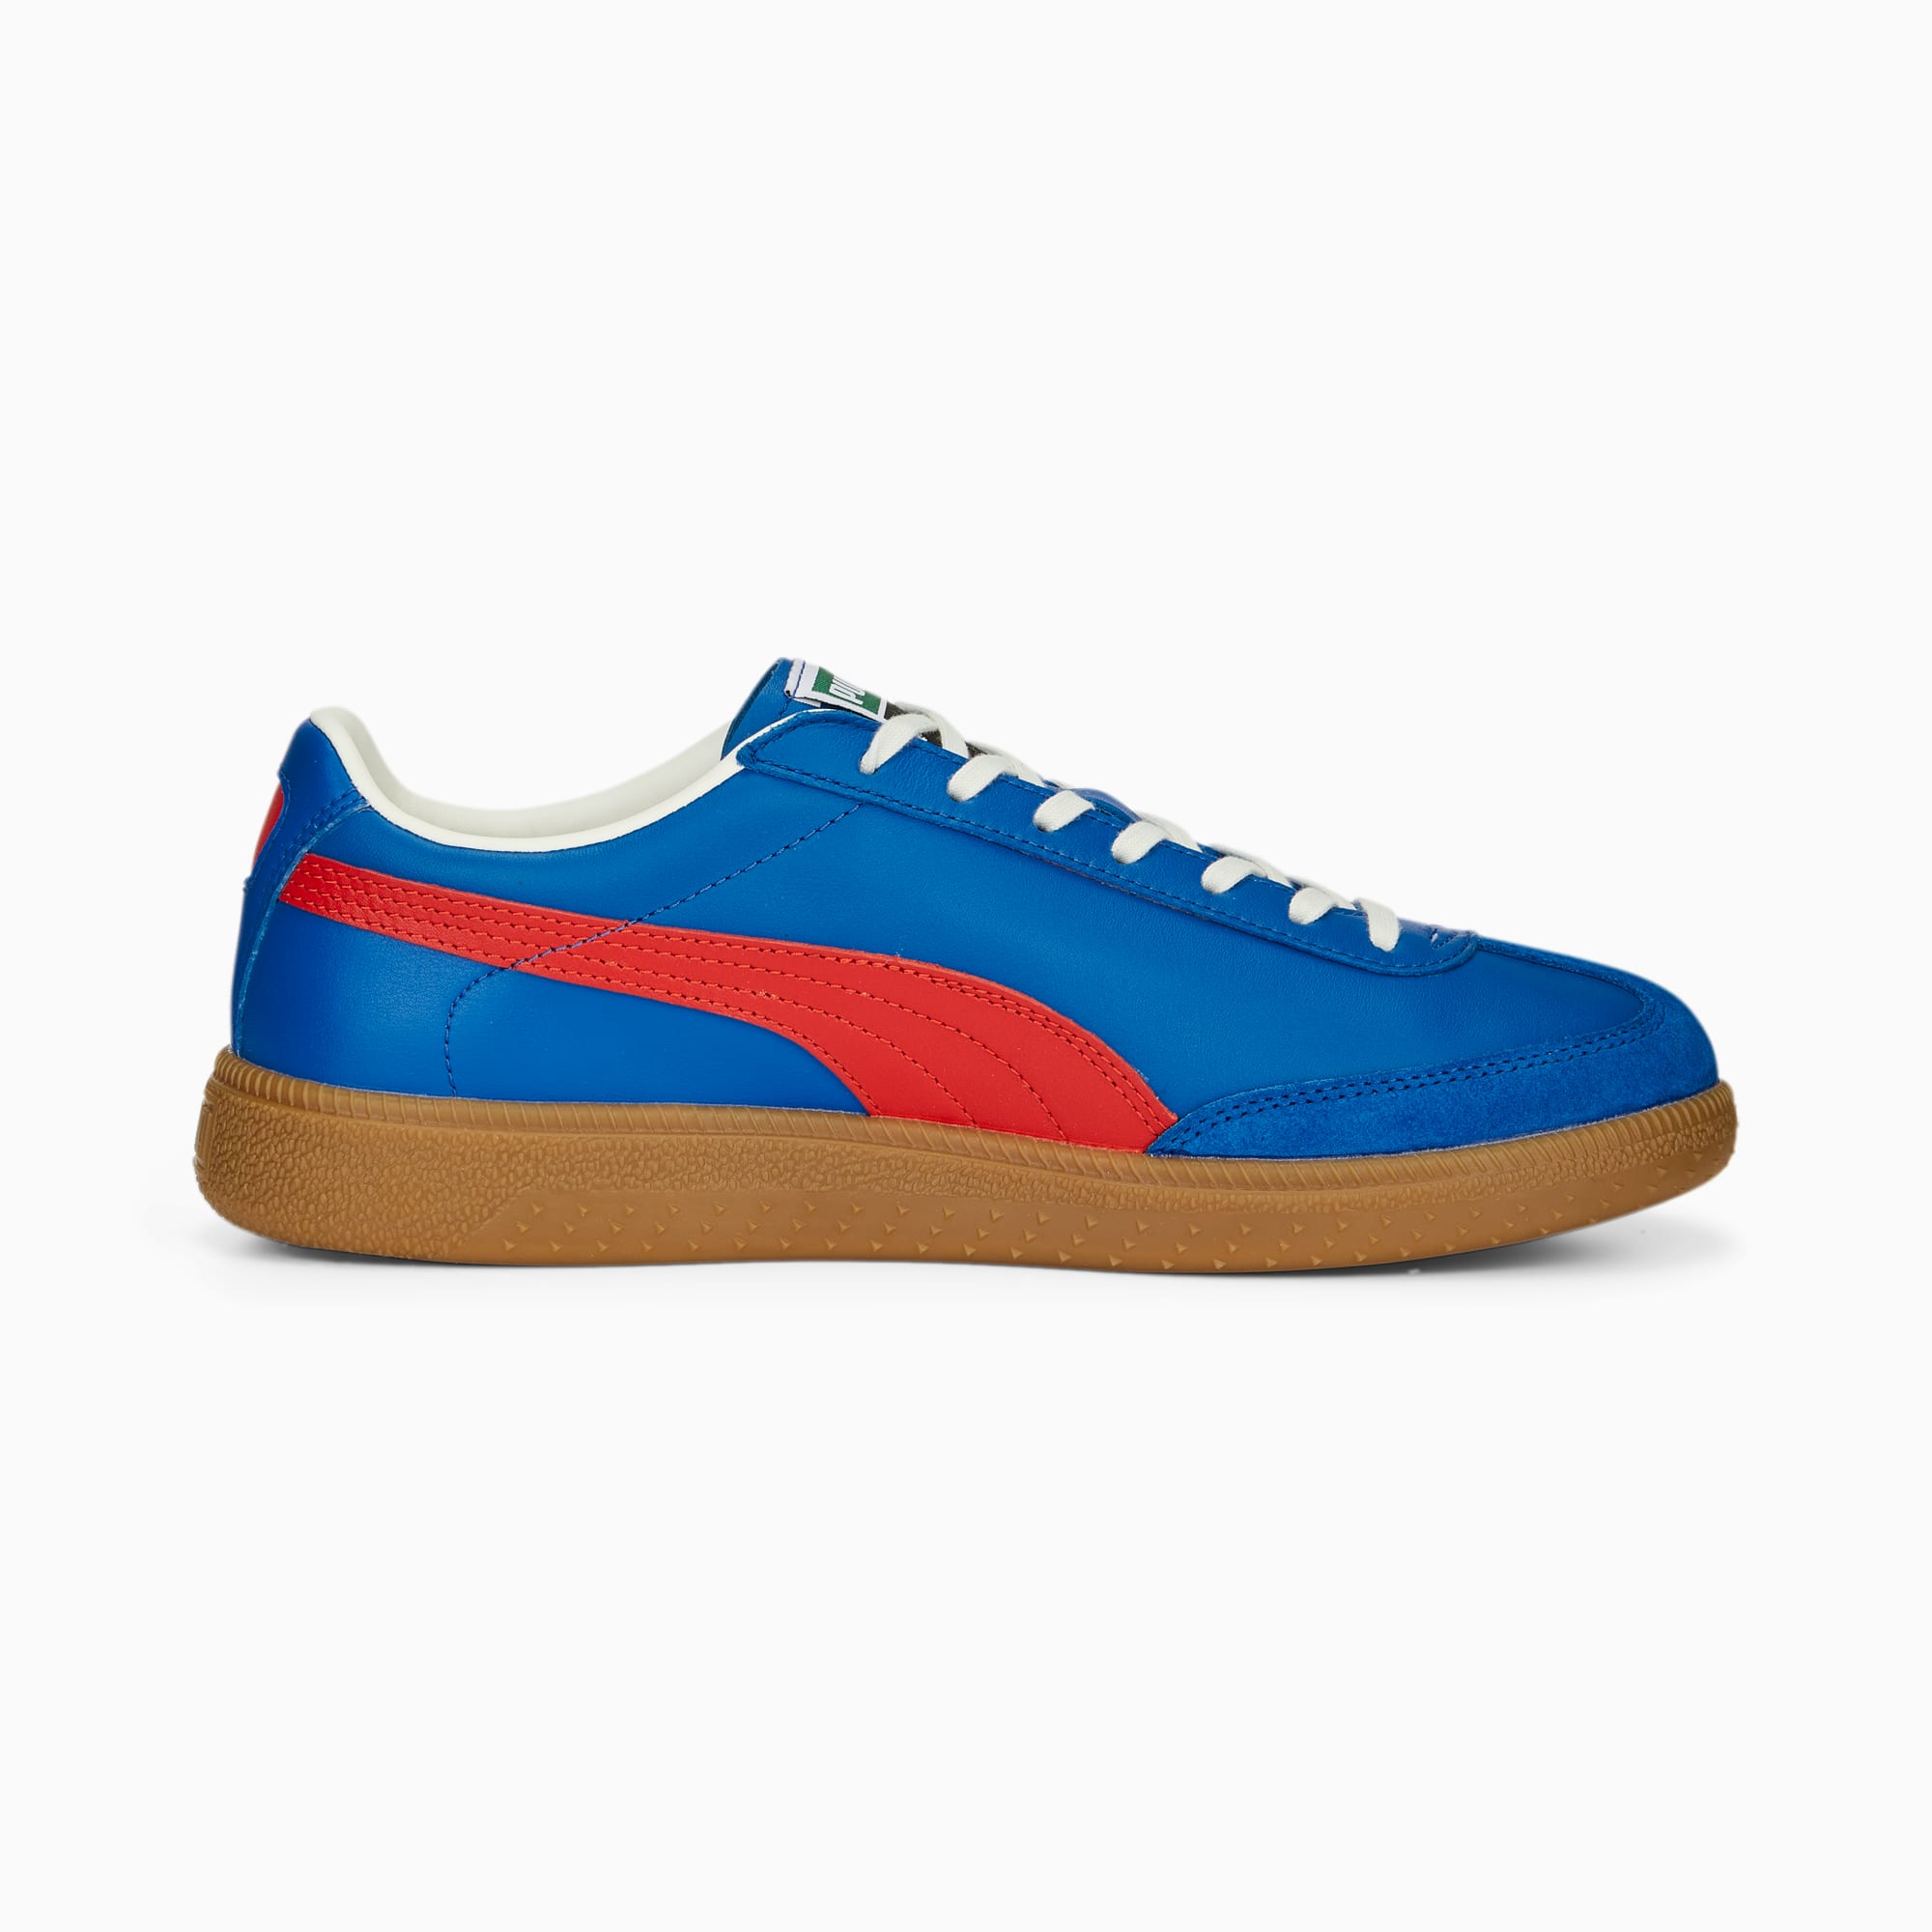 PUMA Colibri OG Sneakers Schuhe, Blau/Rot, Größe: 40.5, Schuhe